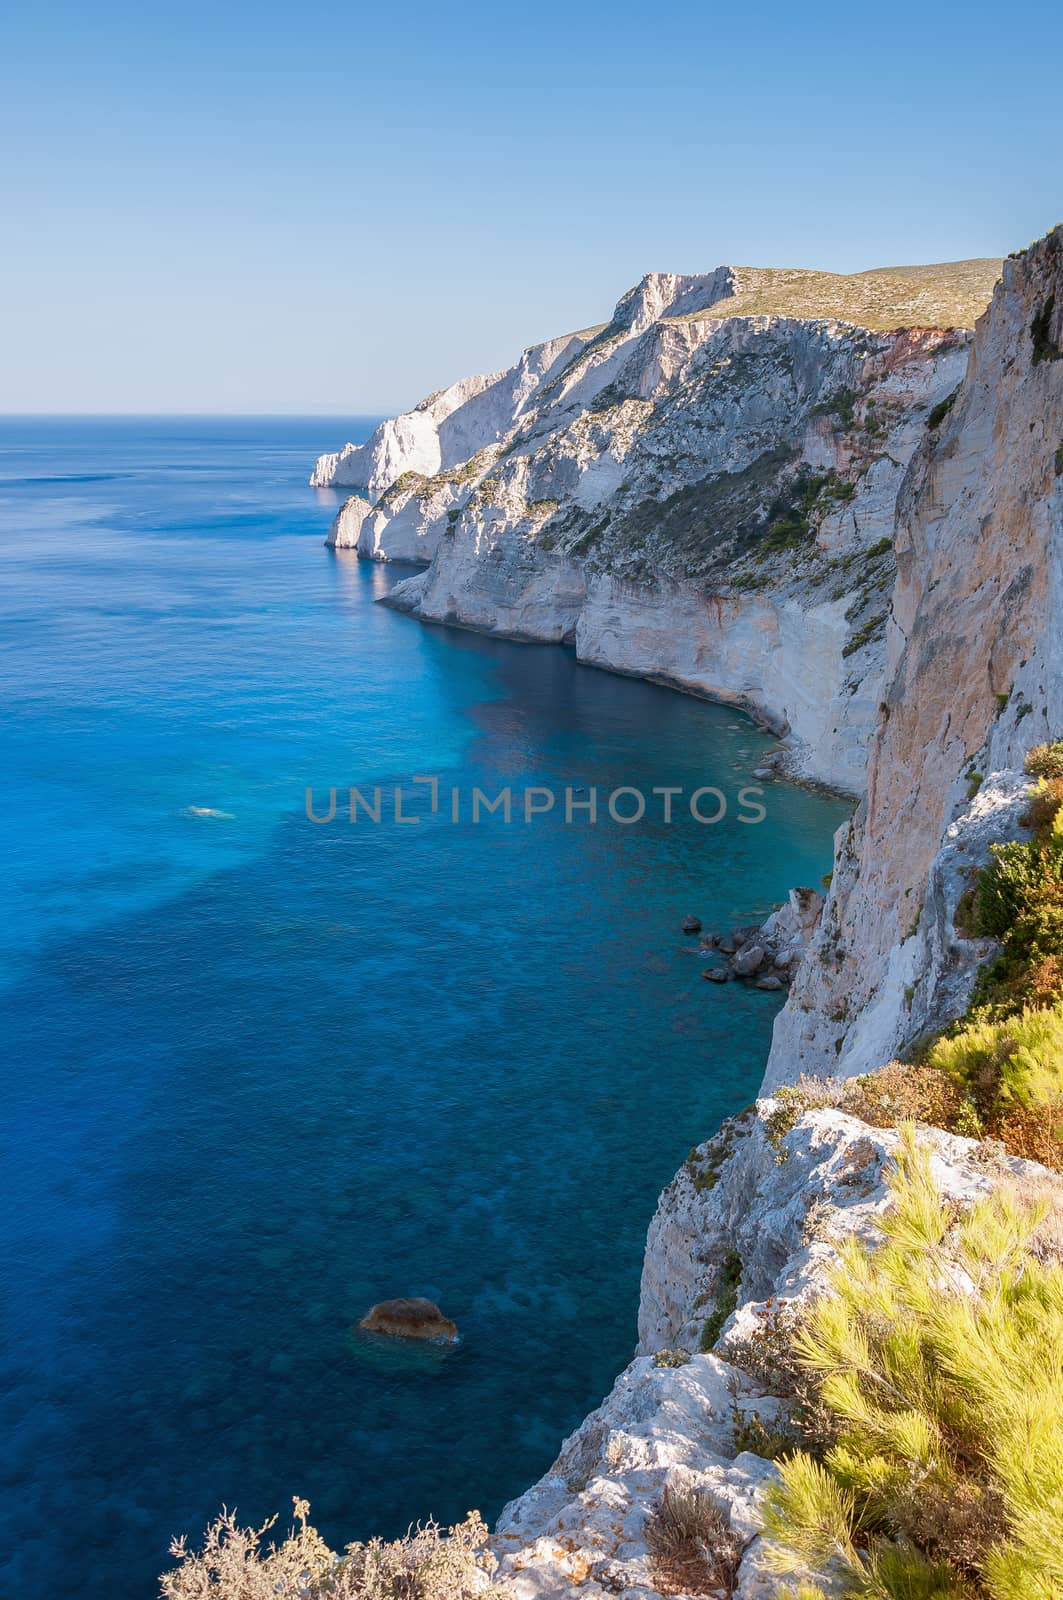 Cliff coast on Zakynthos Island by mkos83